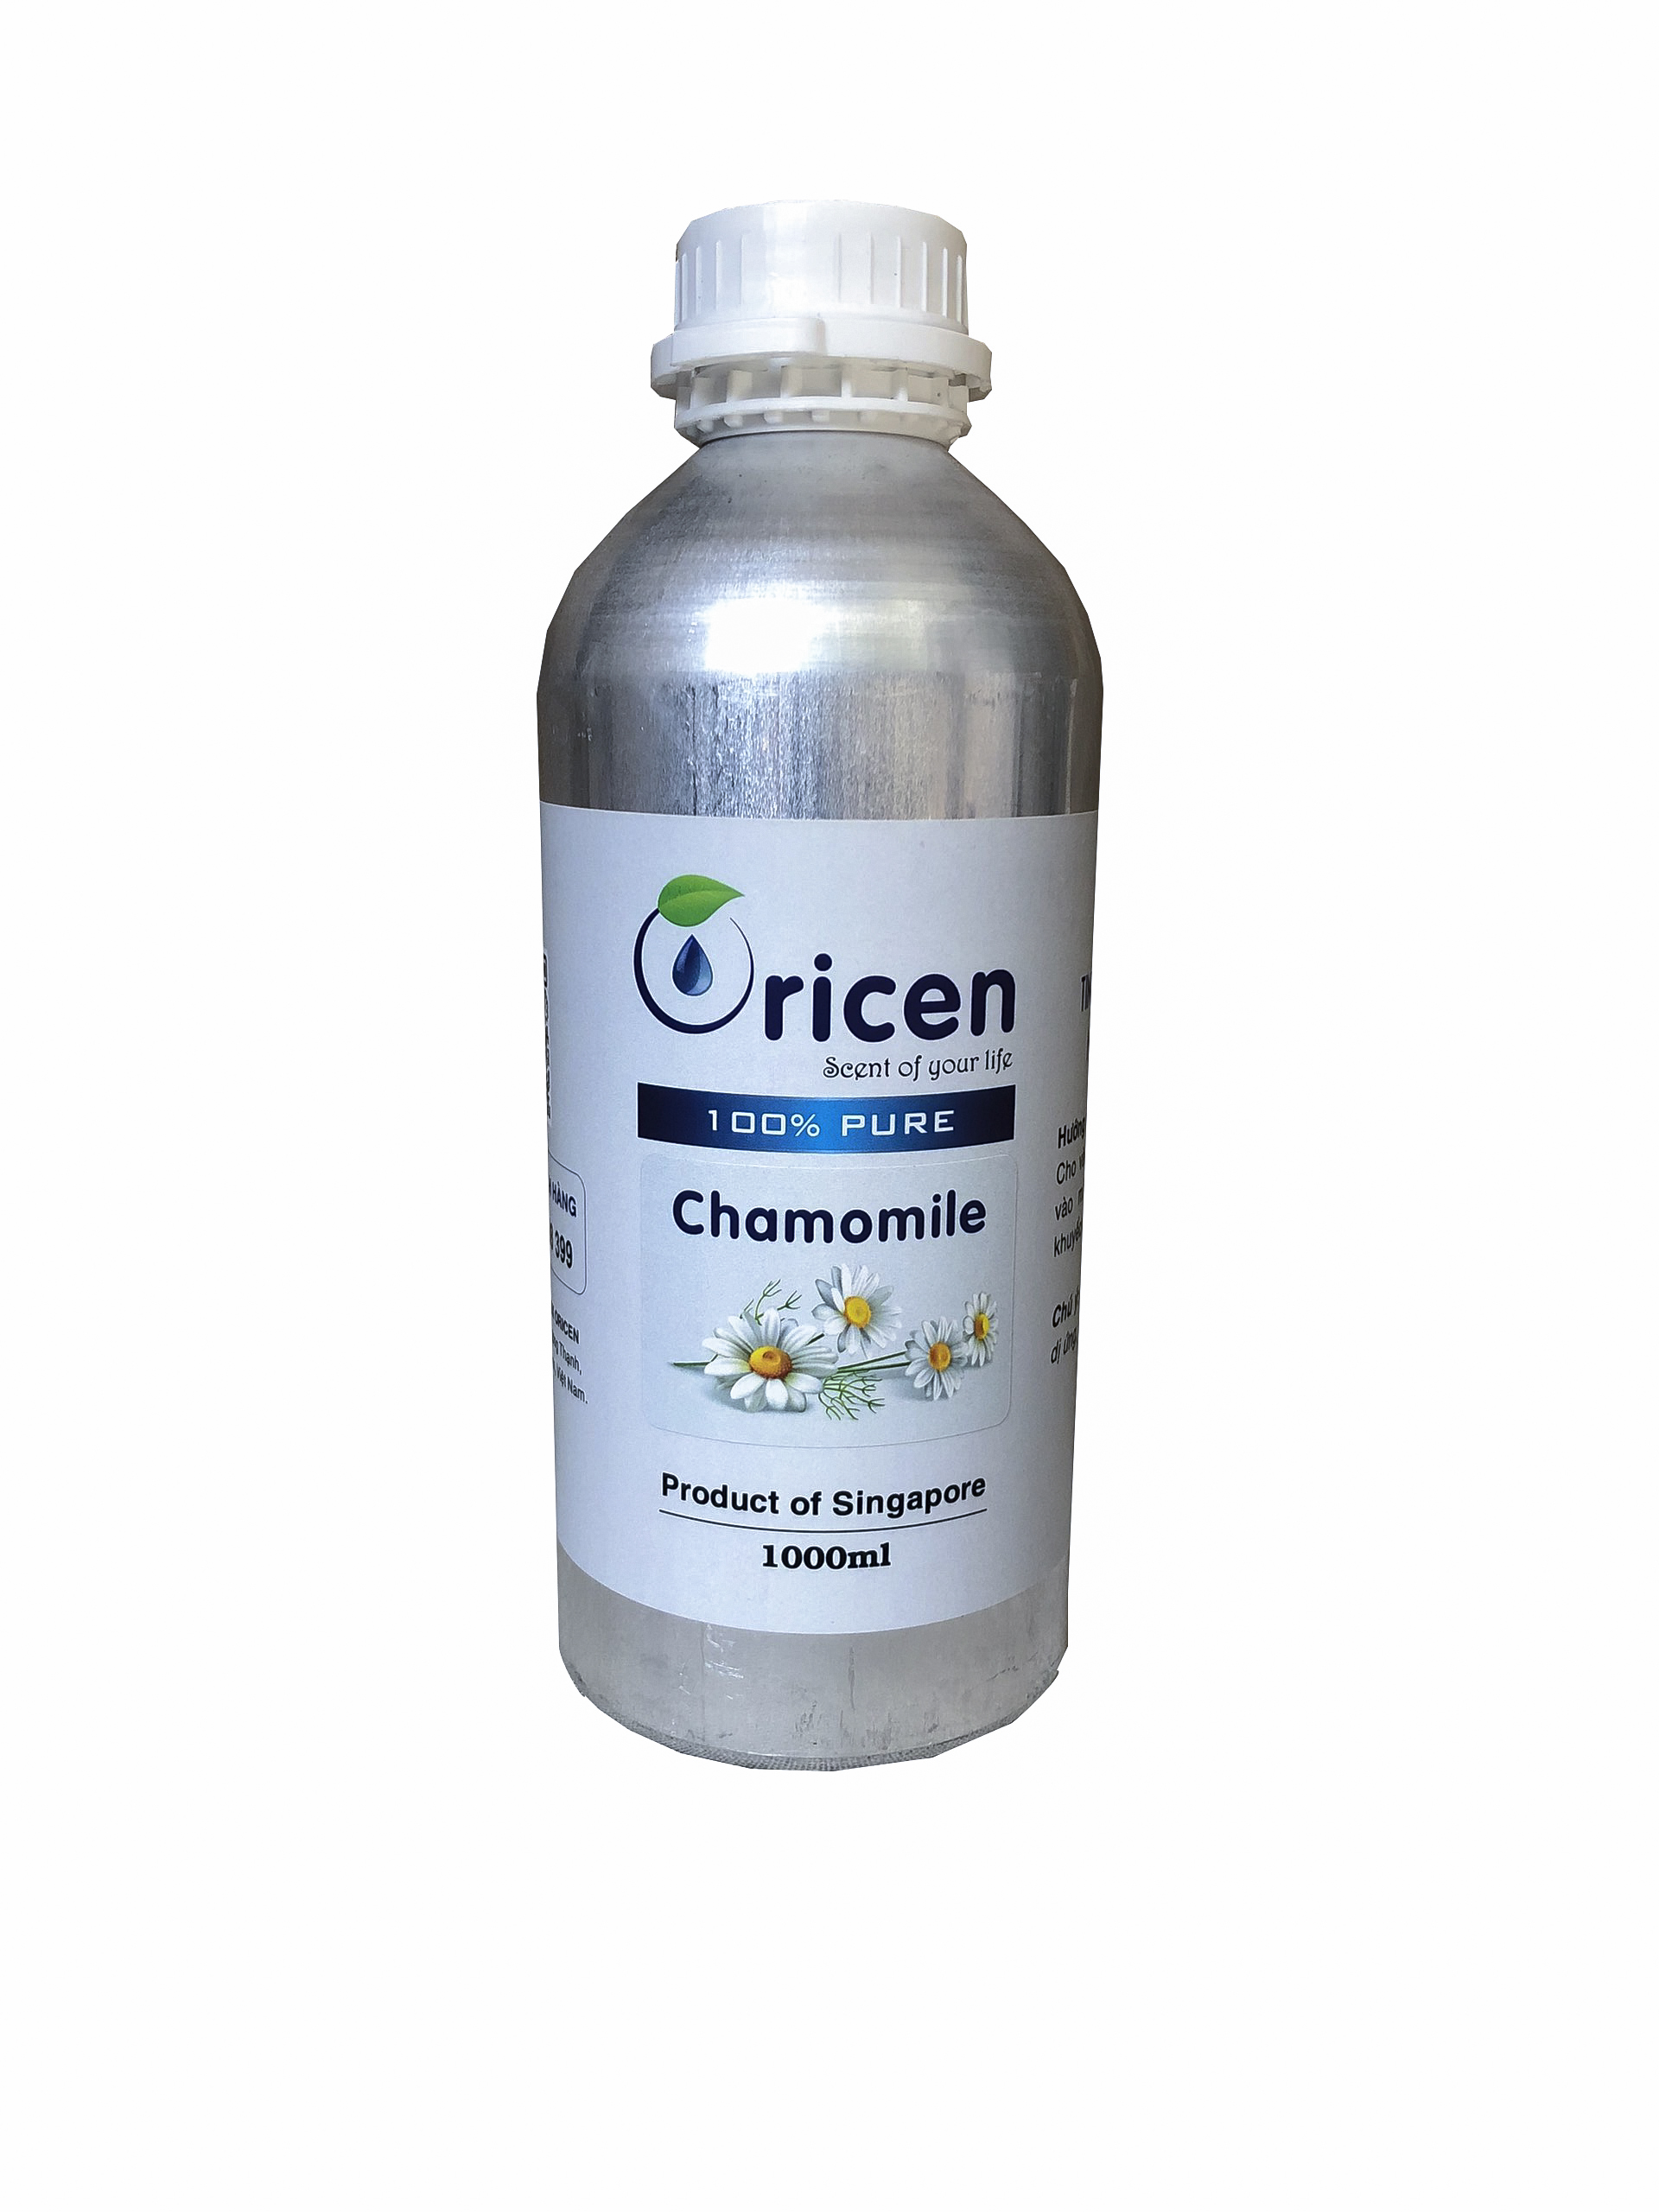 Tinh dầu Cúc La Mã (Chamomile) Oricen 1000ml - Giúp kháng khuẩn, giảm căng thẳng và giảm stress